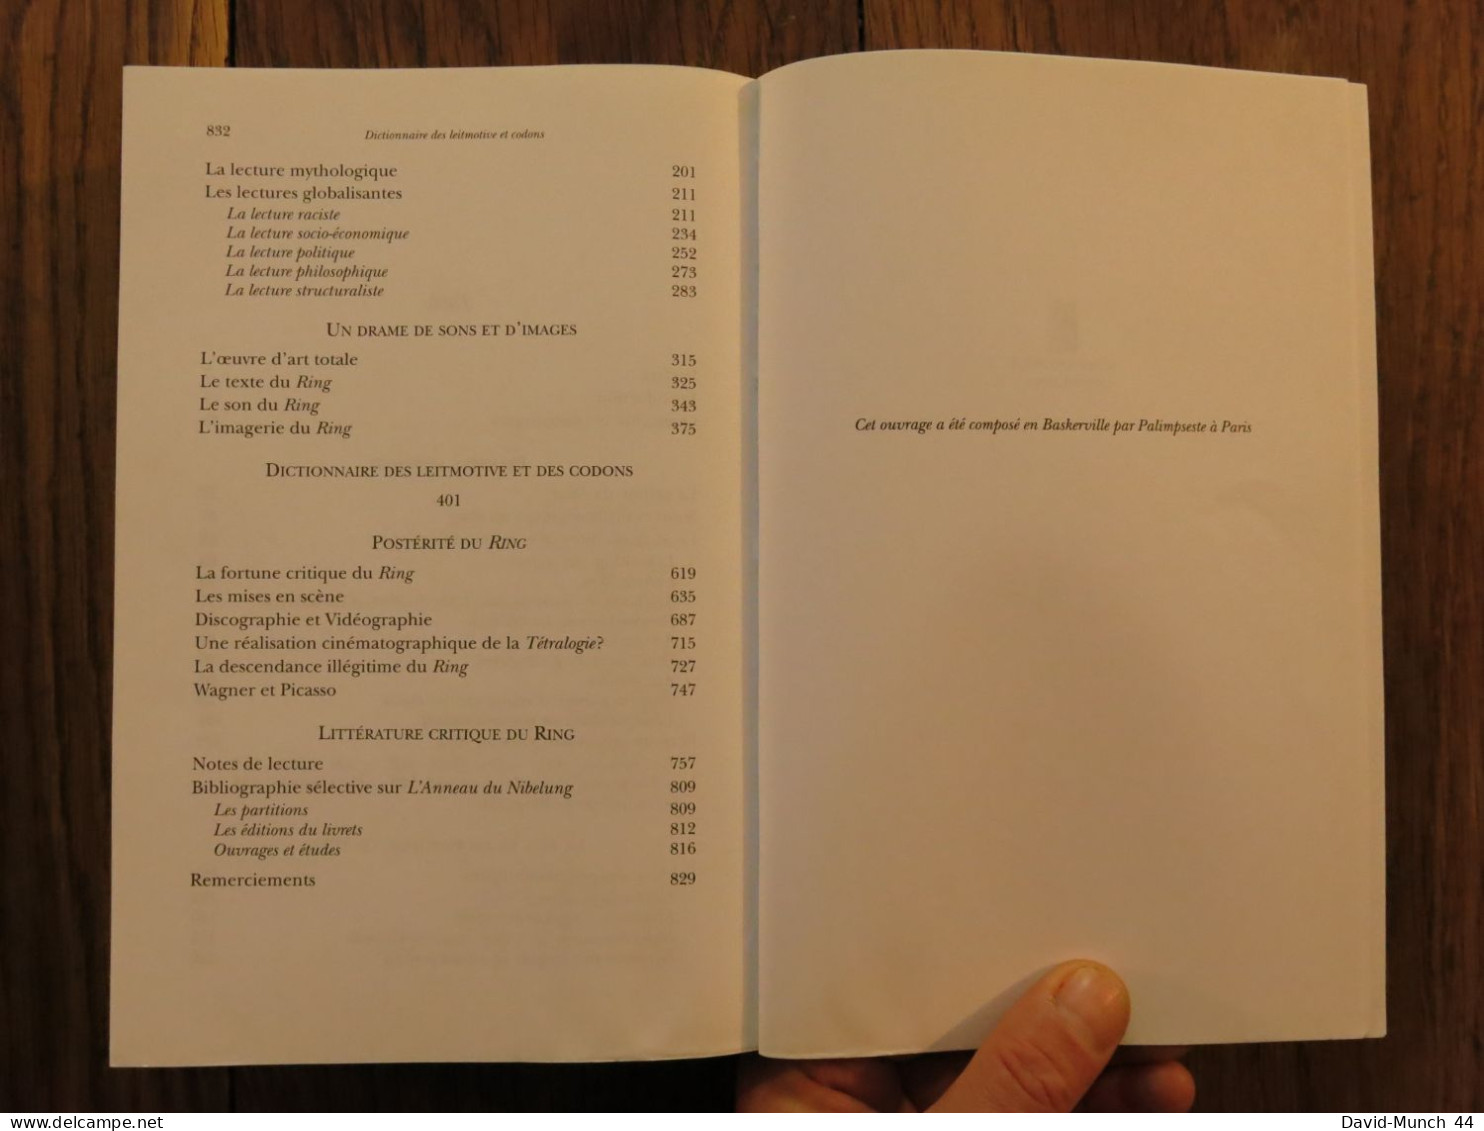 Voyage au cœur du Ring, Wagner-L'anneau du Nibelung, Encyclopédie de Bruno Lussato. Fayard. 2005